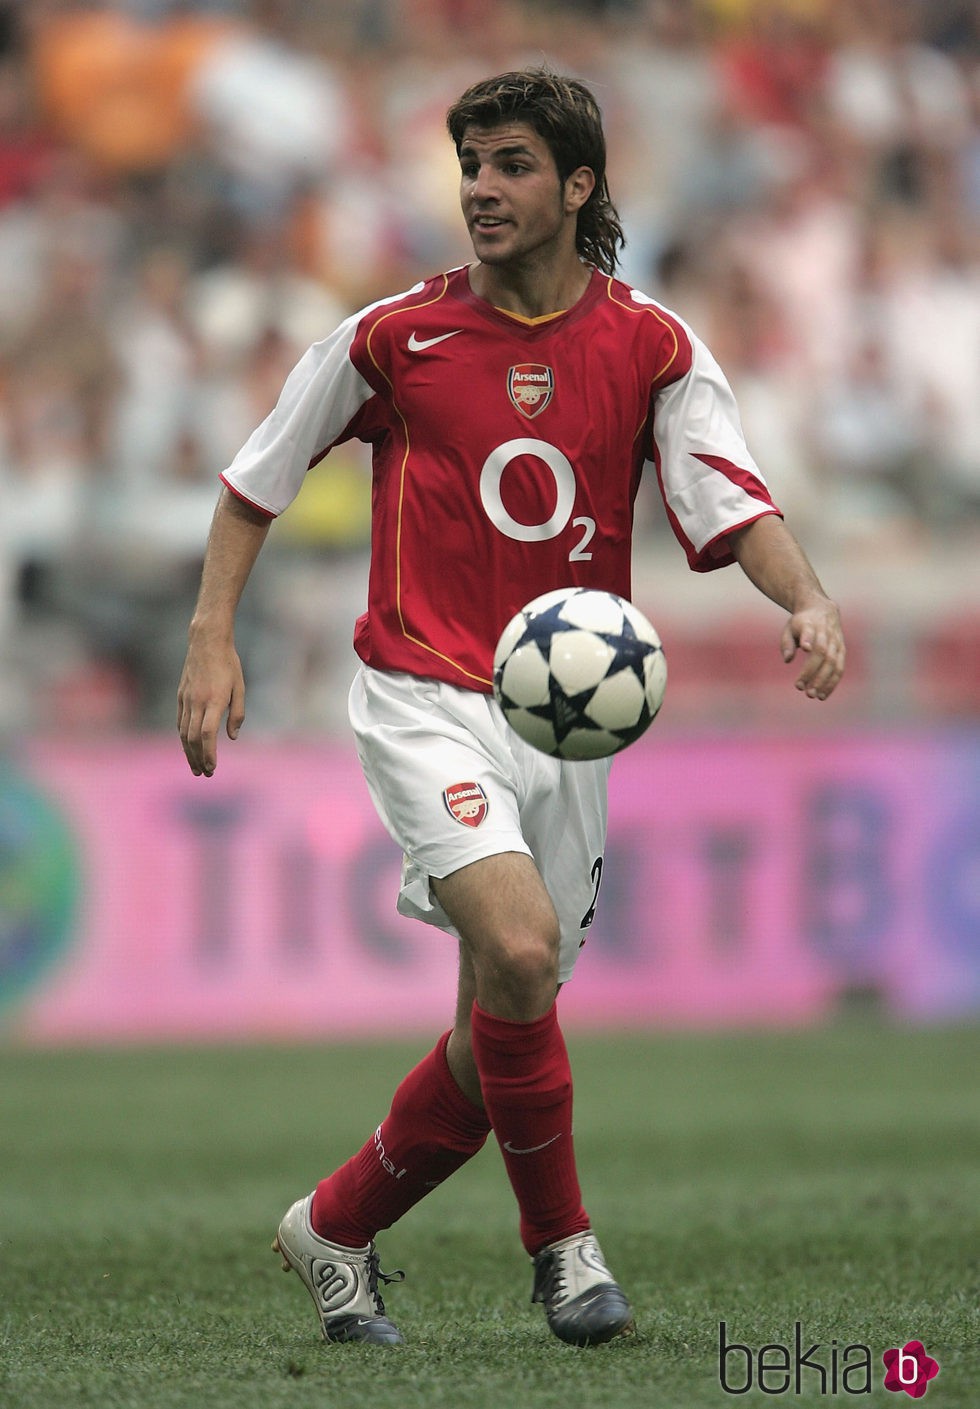 Cesc Fàbregas como jugador del Arsenal en 2004 - Bekia